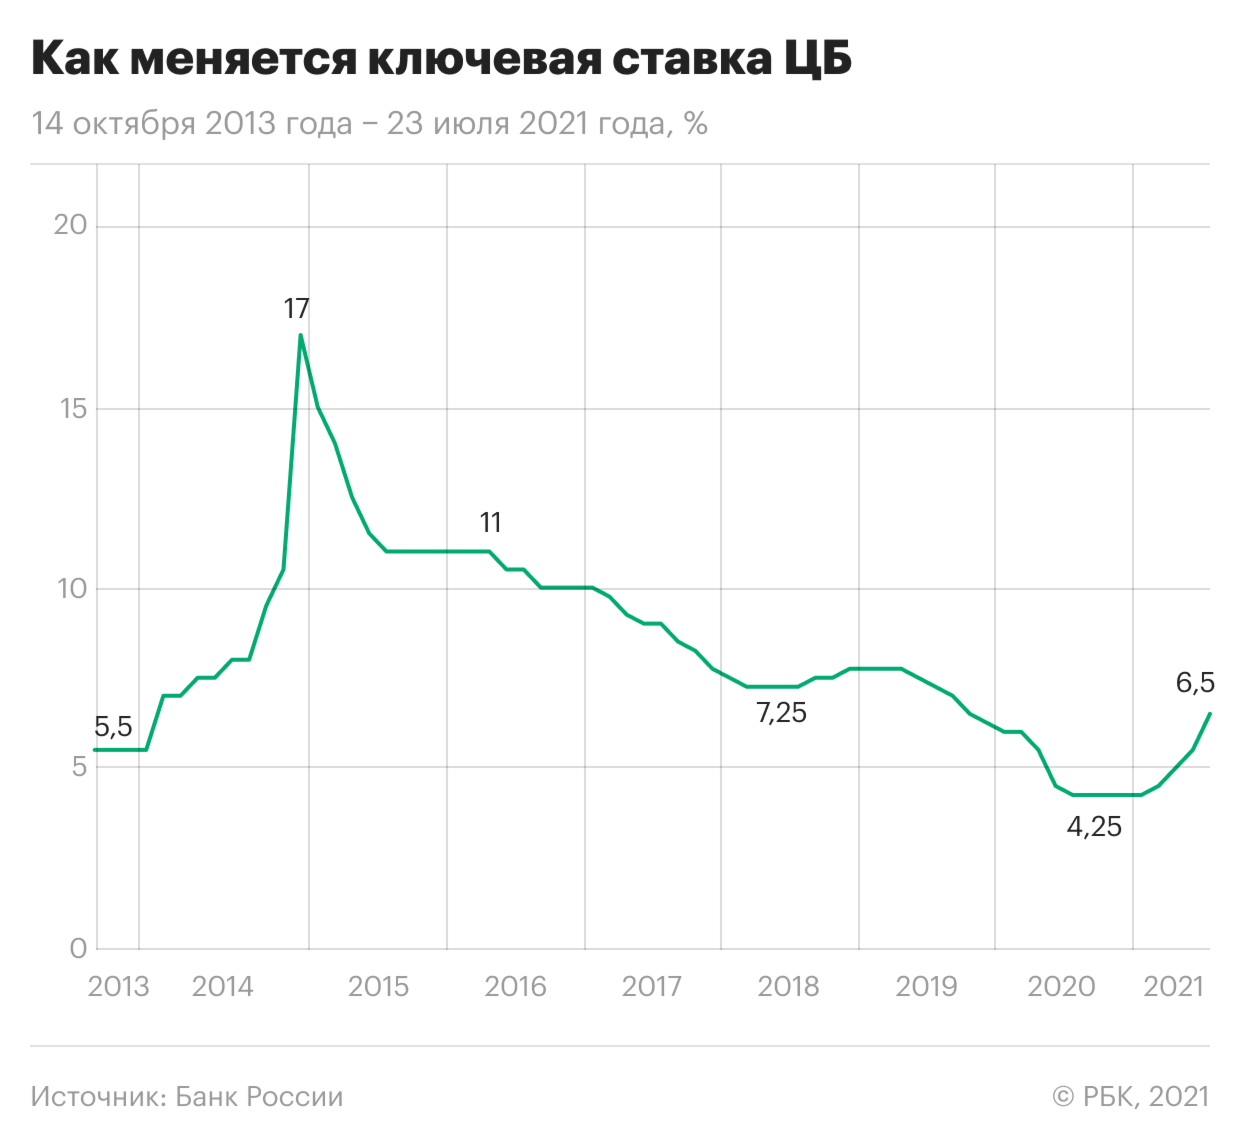 От 17% до нового роста: как меняли ключевую ставку в России. Инфографика